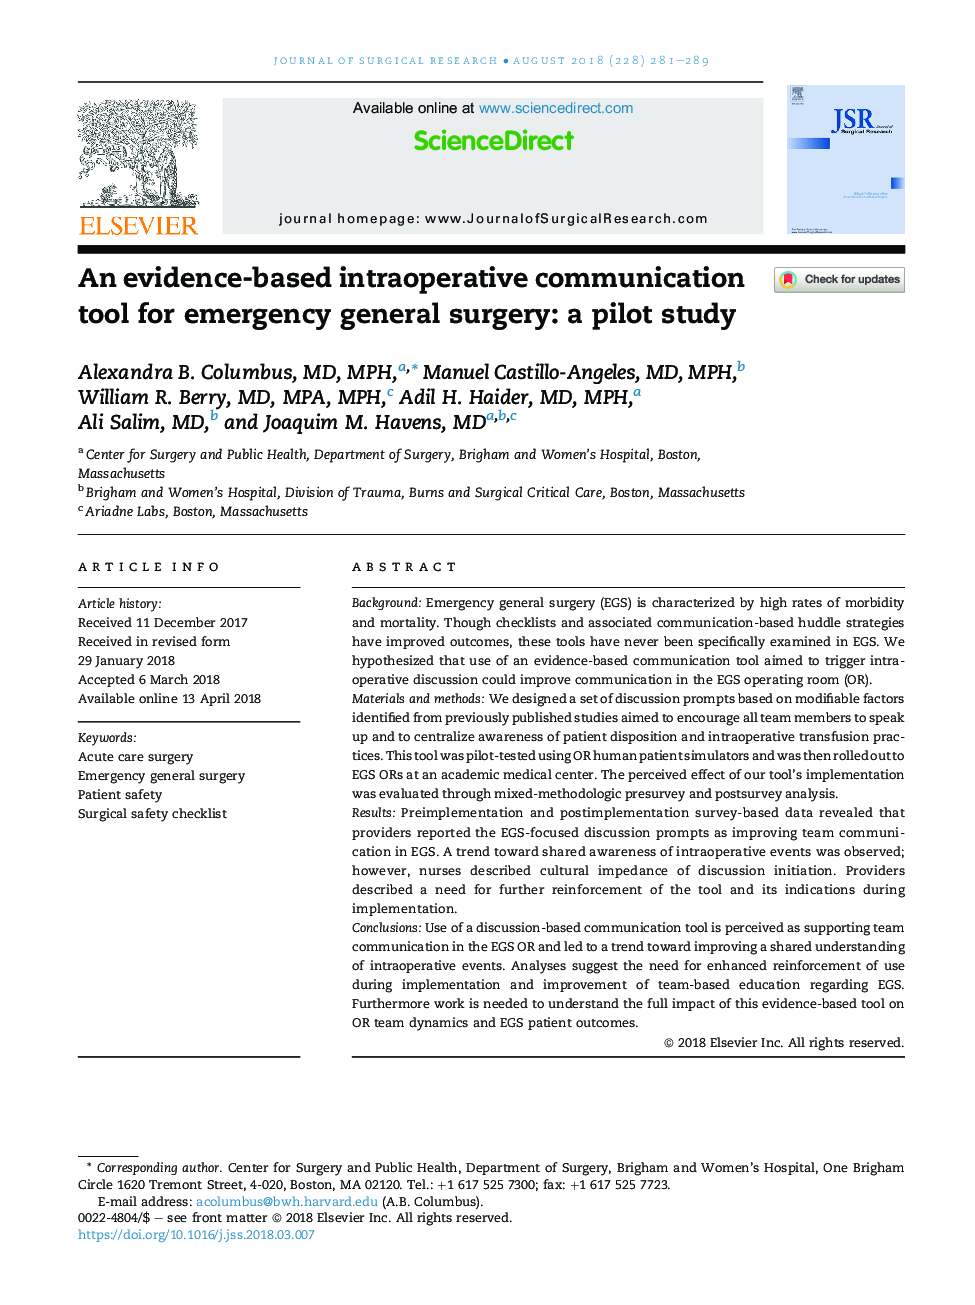 یک ابزار ارتباطی درون عمل جراحی برای جراحی عمومی اورژانس: یک مطالعه آزمایشی 